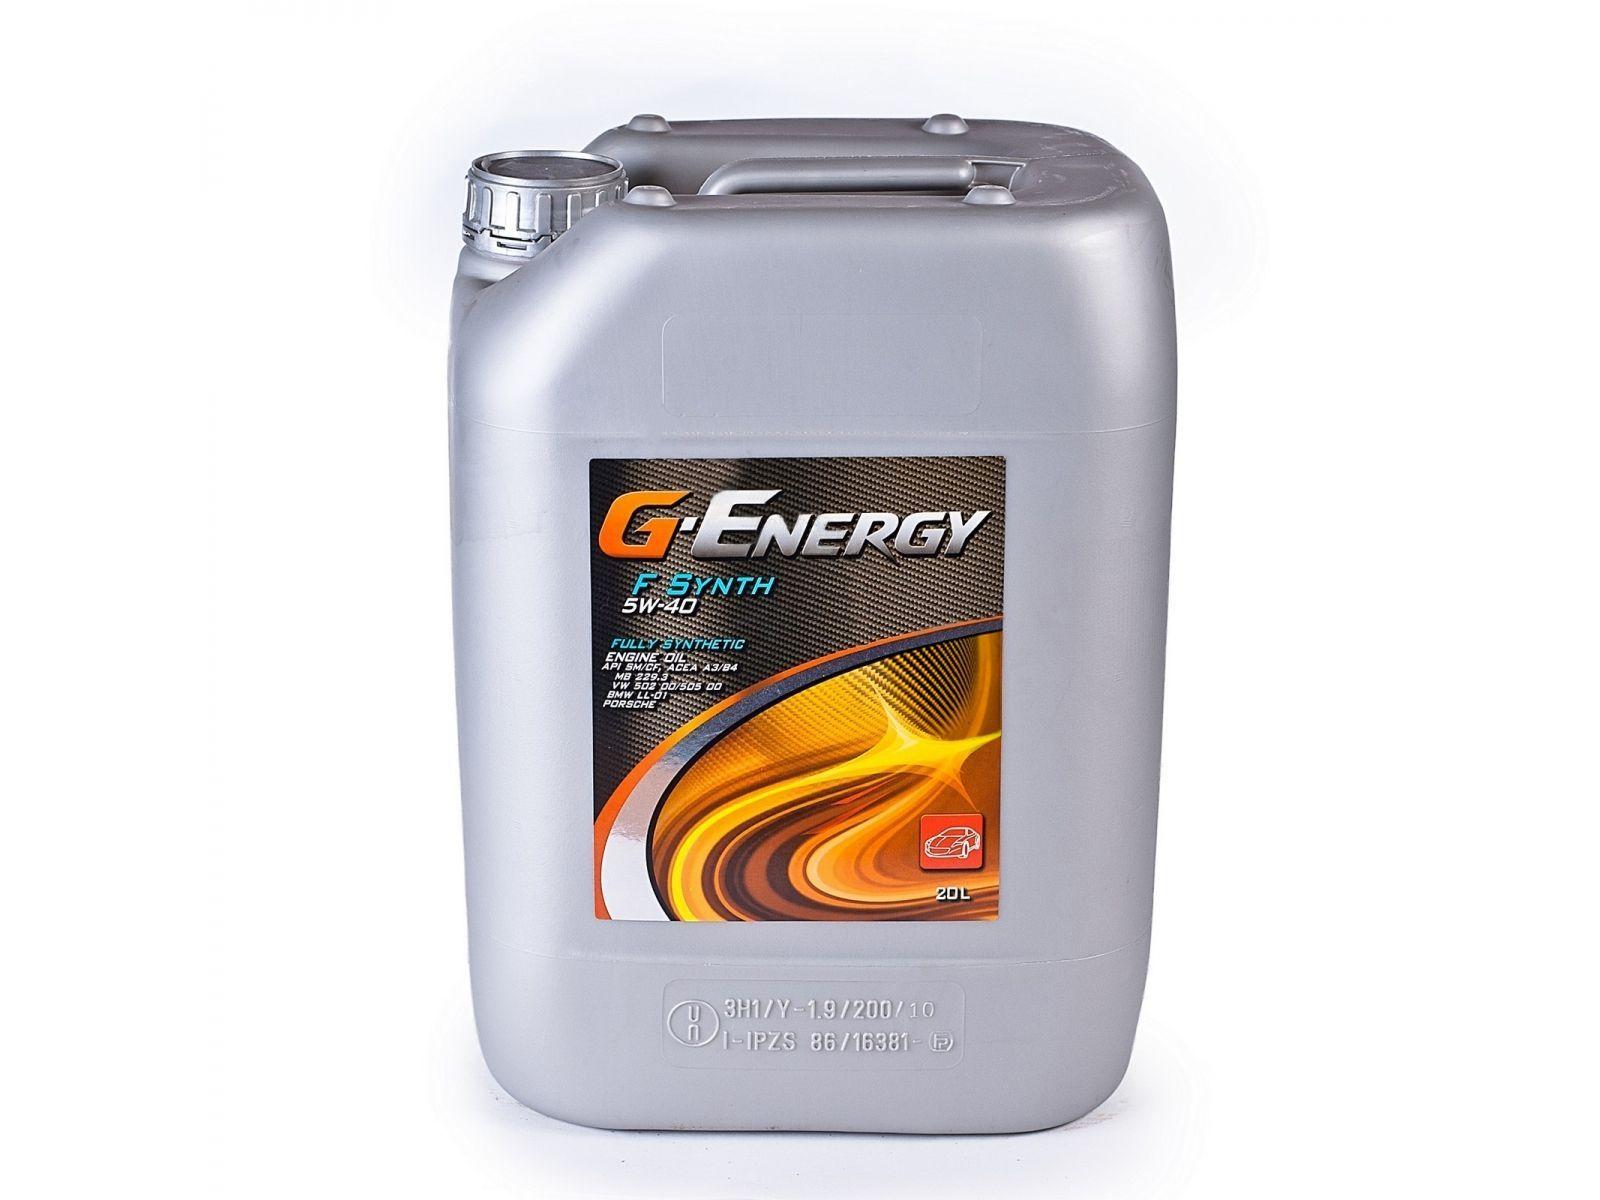 G-Energy gear oil - kinatibuk-ang paghulagway, mga detalye, mga review